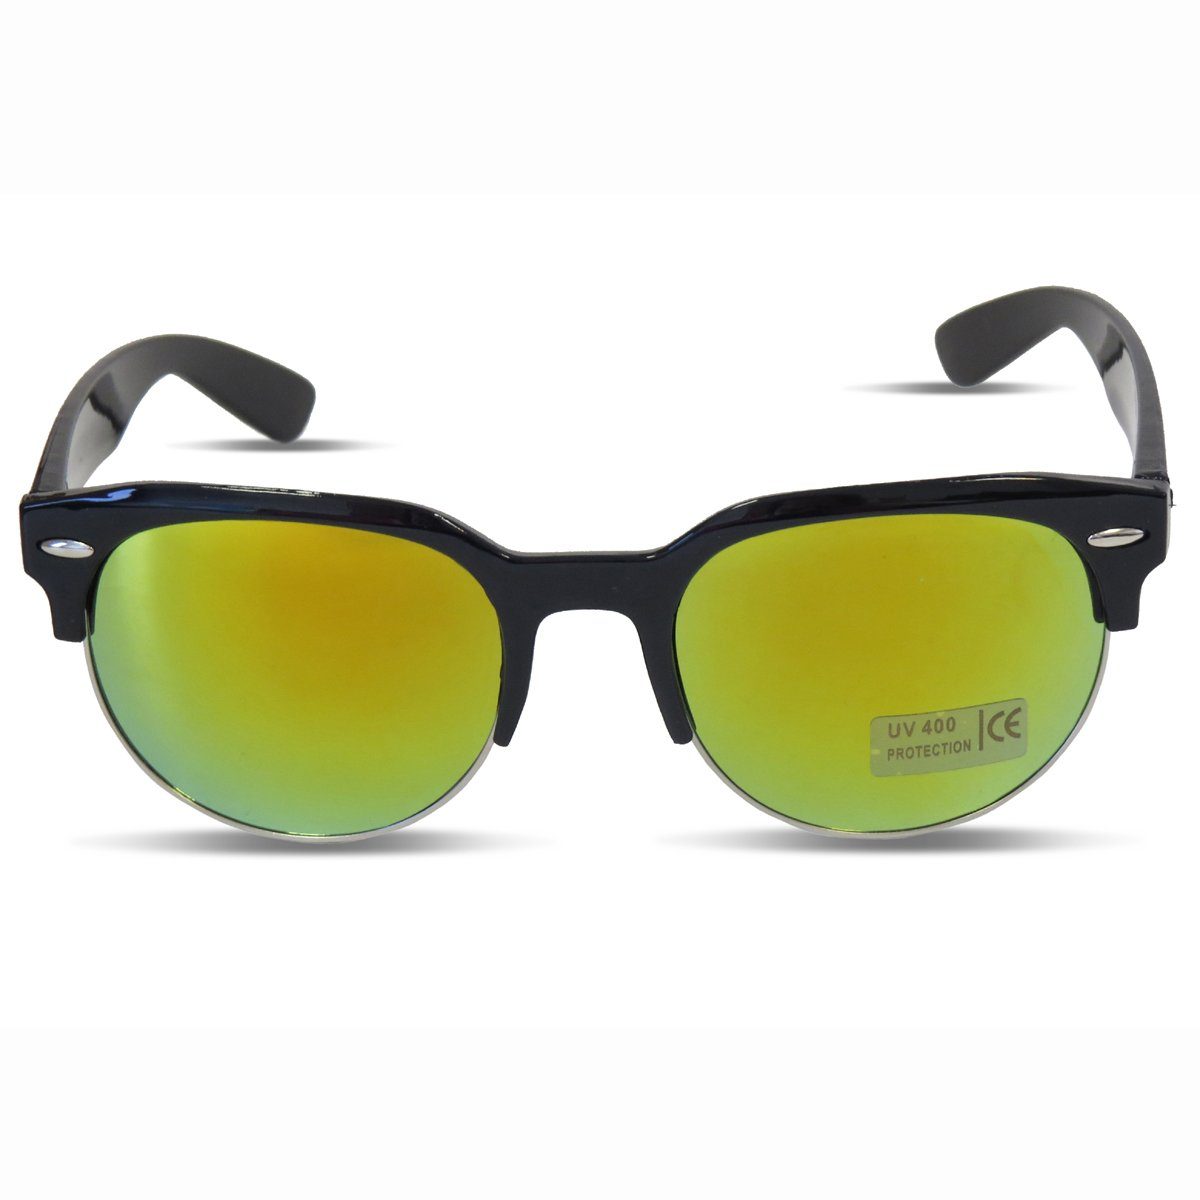 Sonia Originelli Sonnenbrille Sonnenbrille Modern Verspiegelt Klassisch Sommer Onesize schwarz-braun